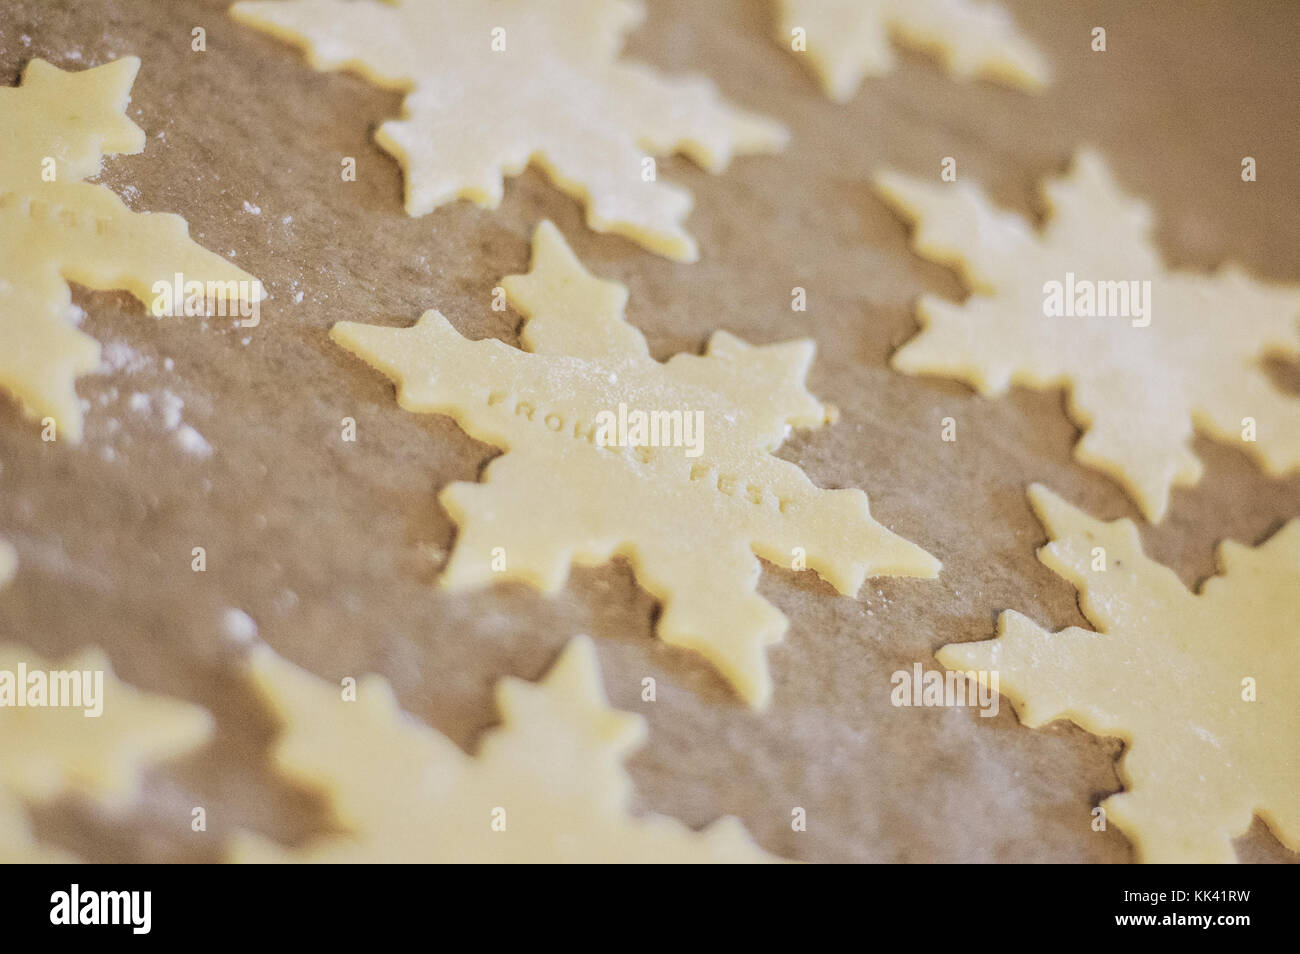 Biscotti di Natale sottilmente laminati e tagliati in forma di stella dicendo le parole tedesche frohes fest, che significa vacanze felici, su carta pergamena sul bakin Foto Stock